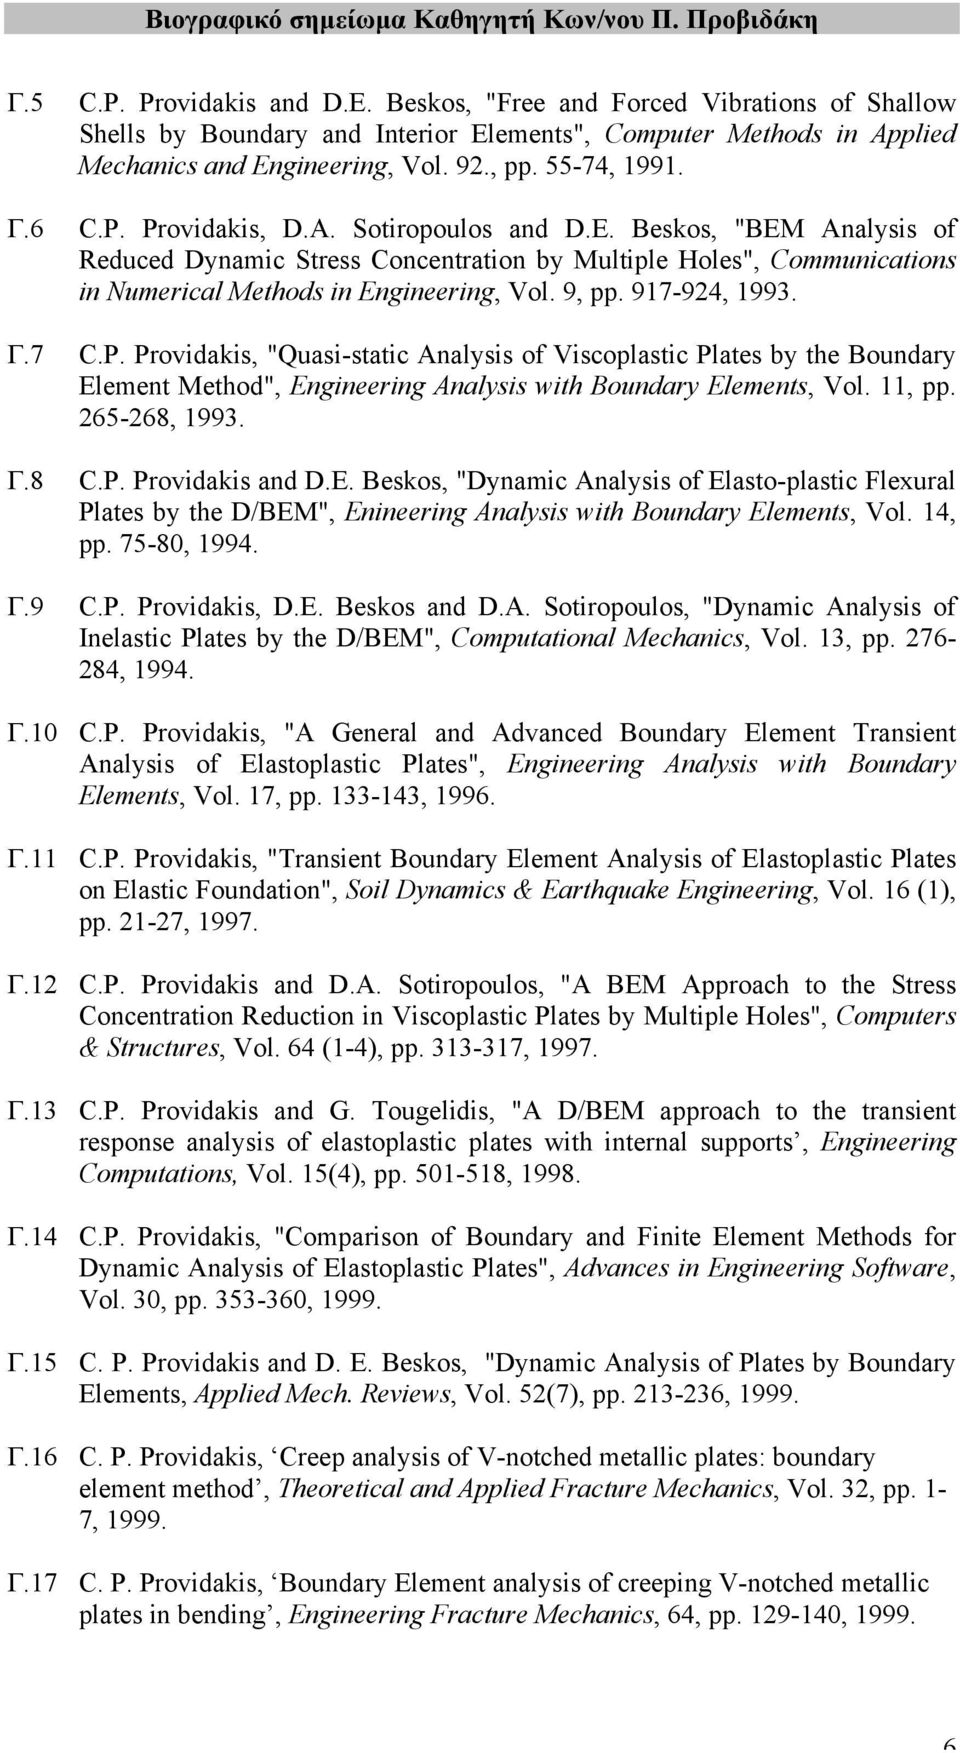 917-924, 1993. Γ.7 C.P. Providakis, "Quasi-static Analysis of Viscoplastic Plates by the Boundary Element Method", Engineering Analysis with Boundary Elements, Vol. 11, pp. 265-268, 1993. Γ.8 C.P. Providakis and D.